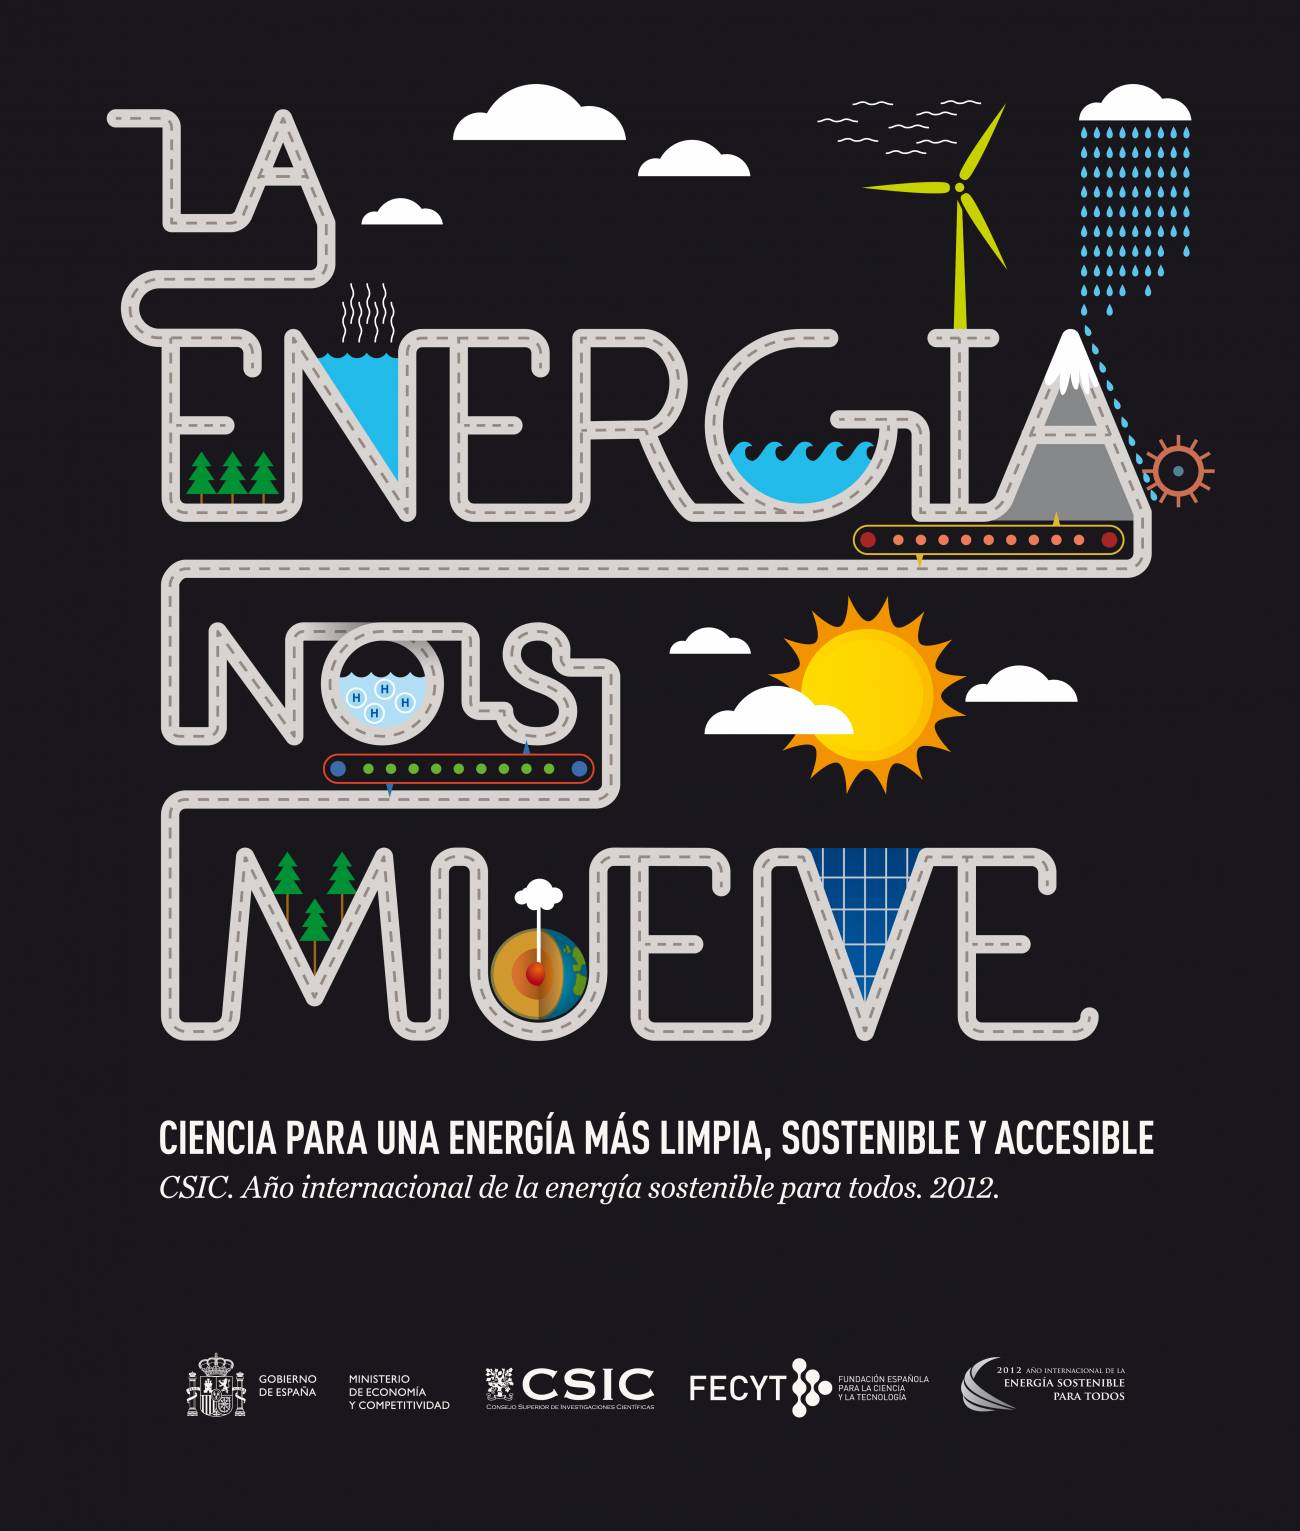 Imagen del cartel de la exposición "La energía nos mueve"